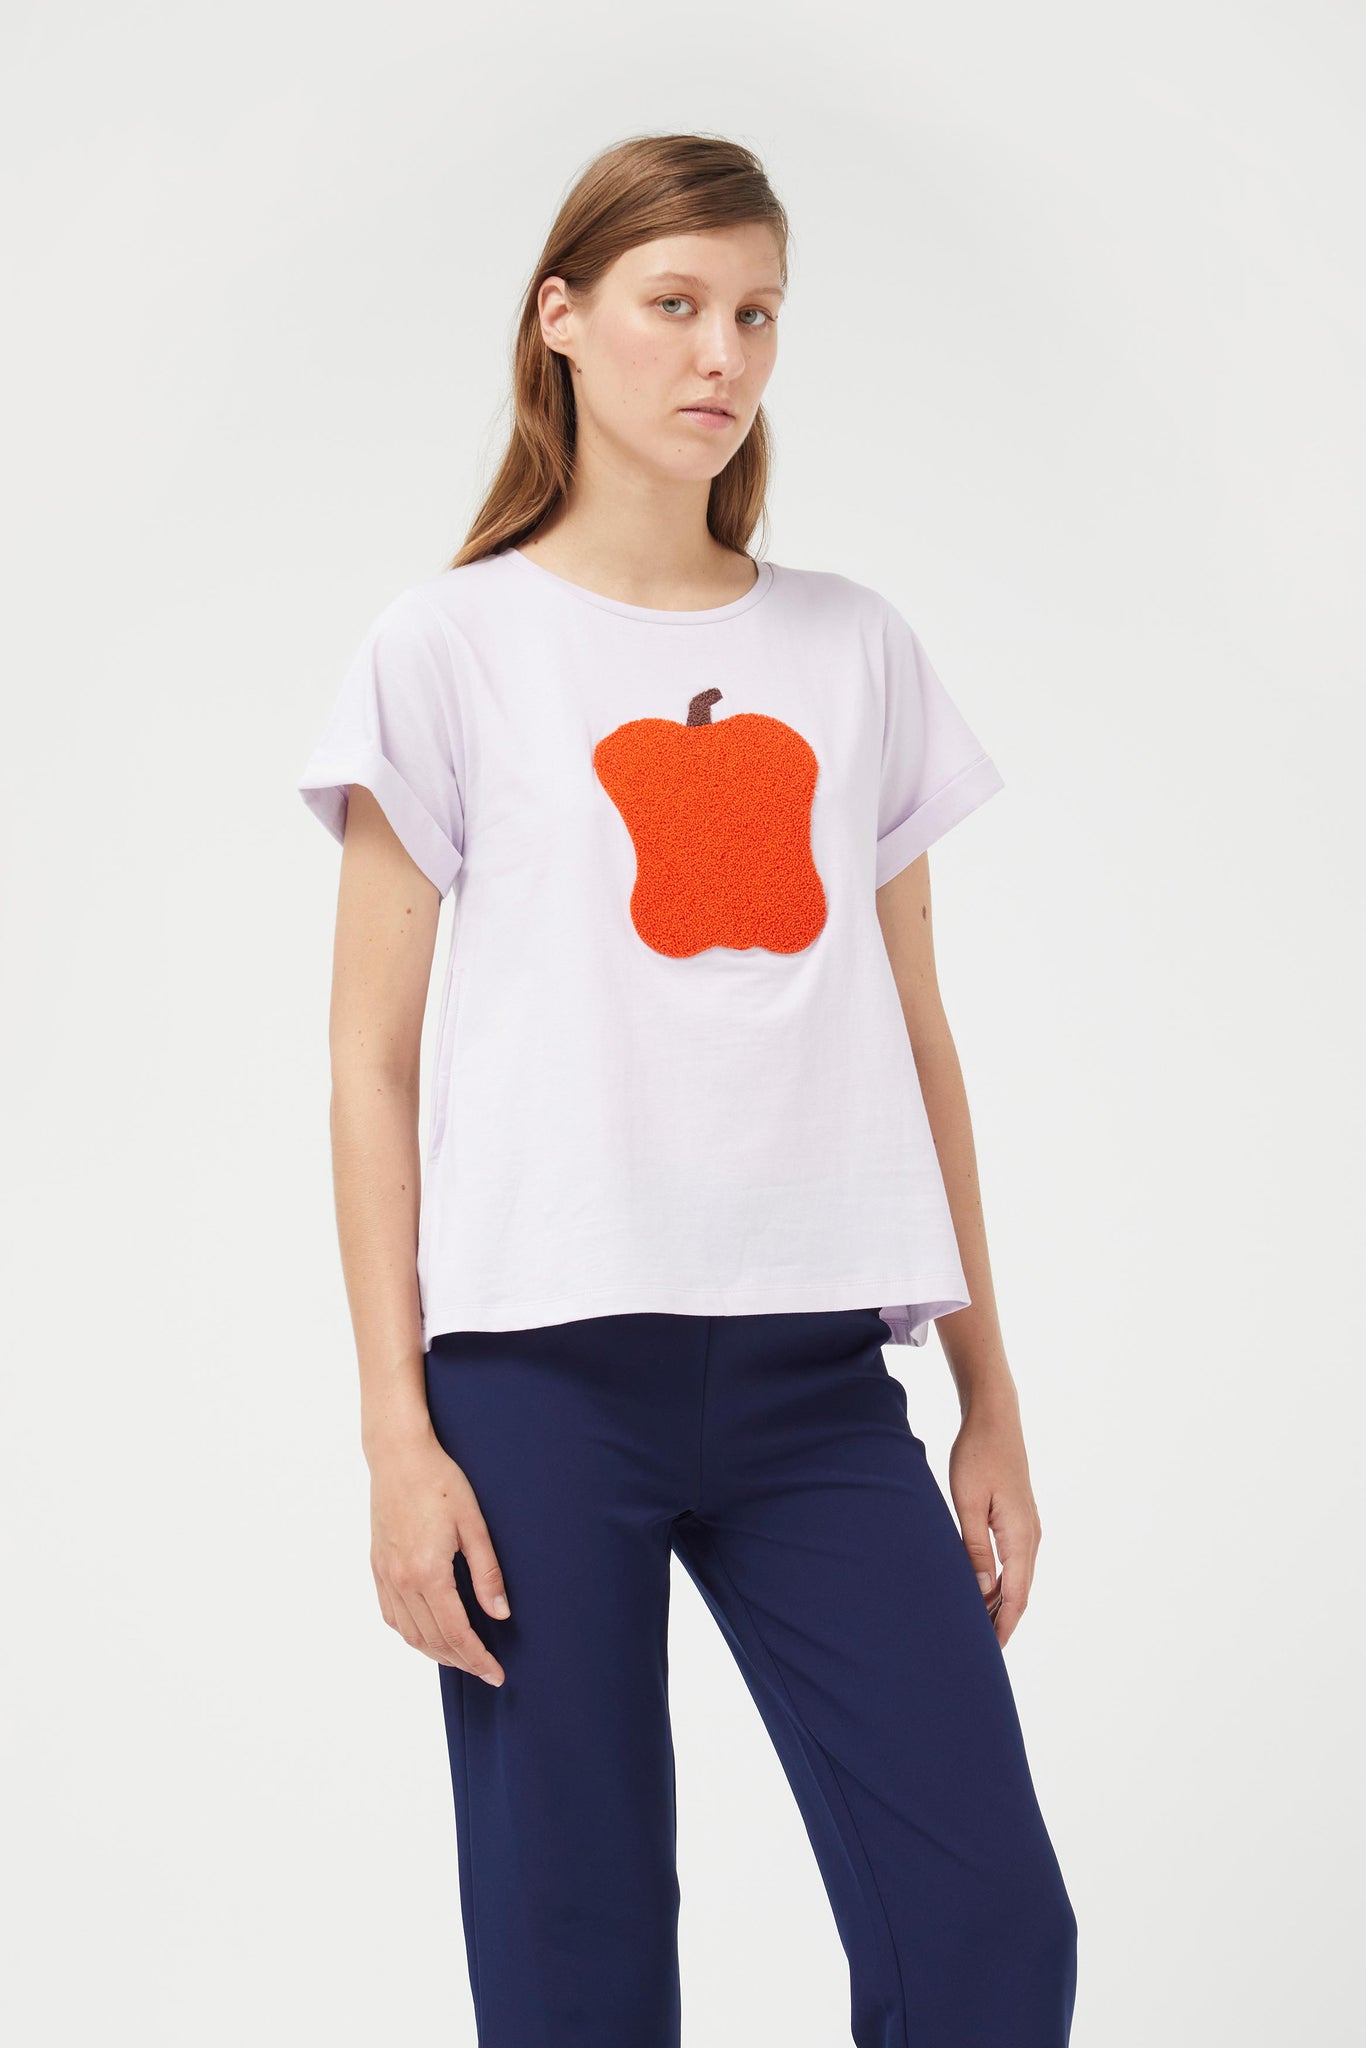 Compania - Apple Tshirt